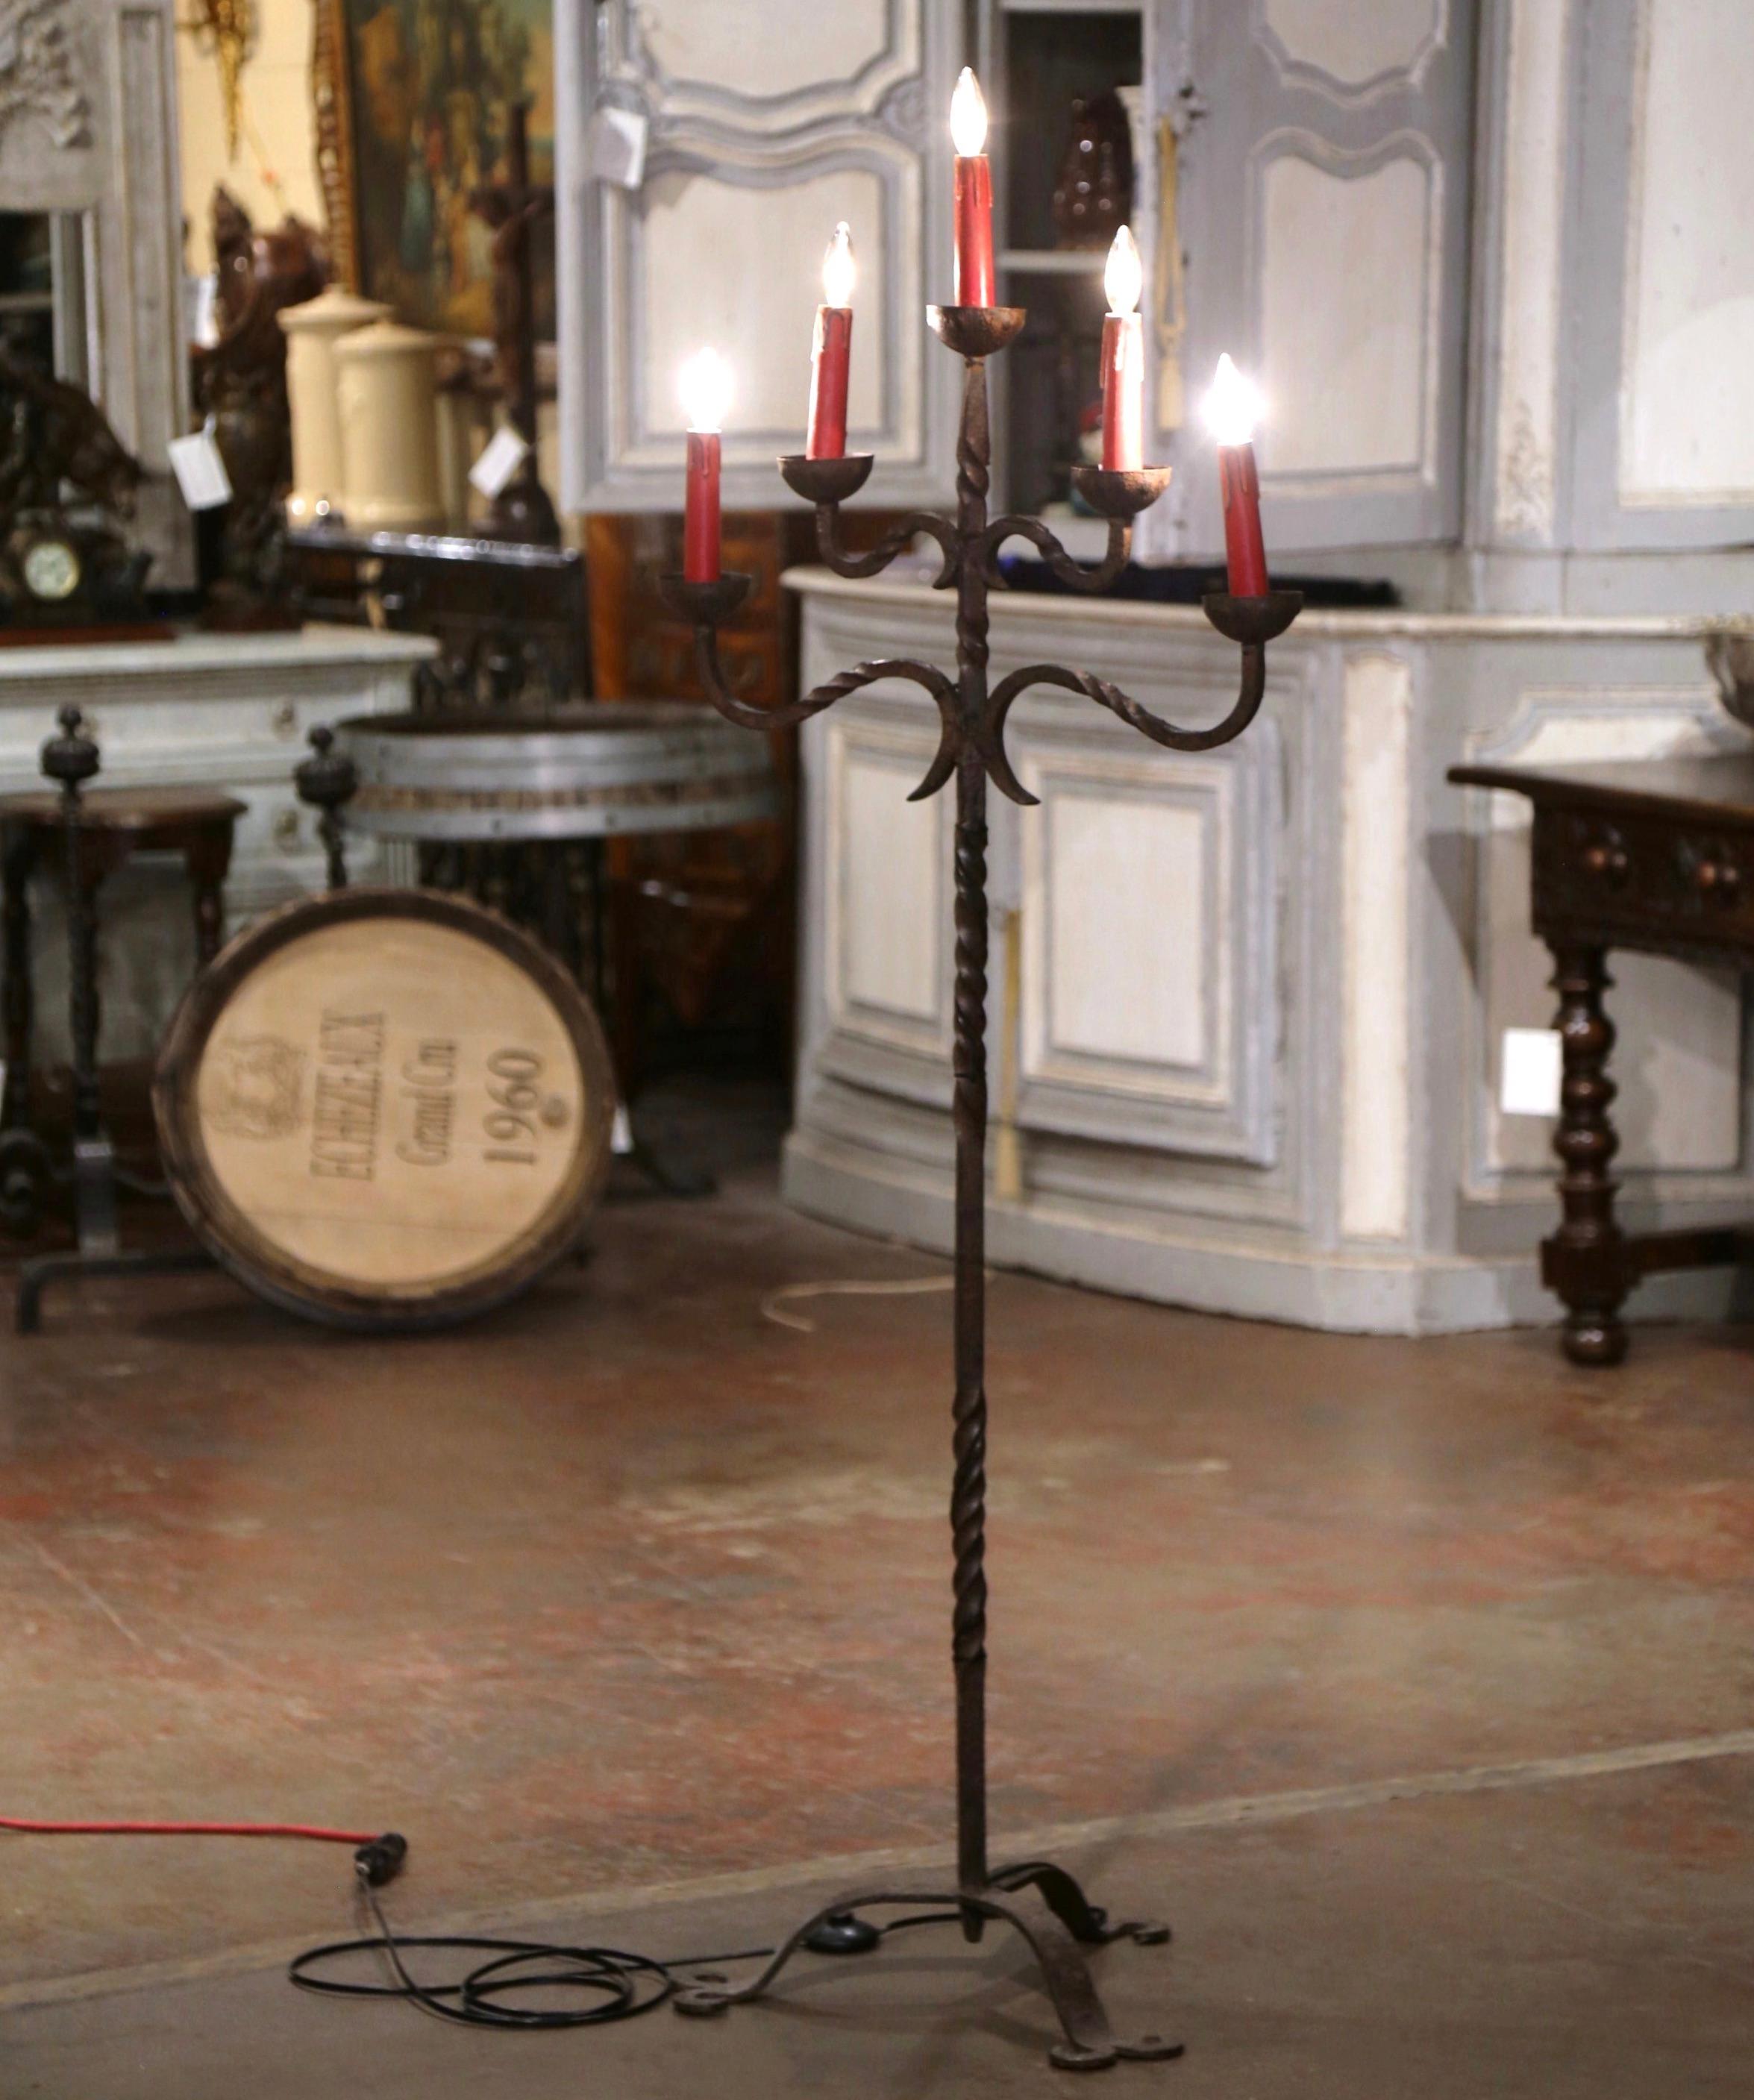 Décorez un bureau ou une étude avec cet élégant luminaire de sol. Fabriquée dans le sud de la France, vers 1860, la lampe candélabre repose sur une base tripode terminée par trois pieds. La tige torsadée est surmontée de cinq bras courbes, tous